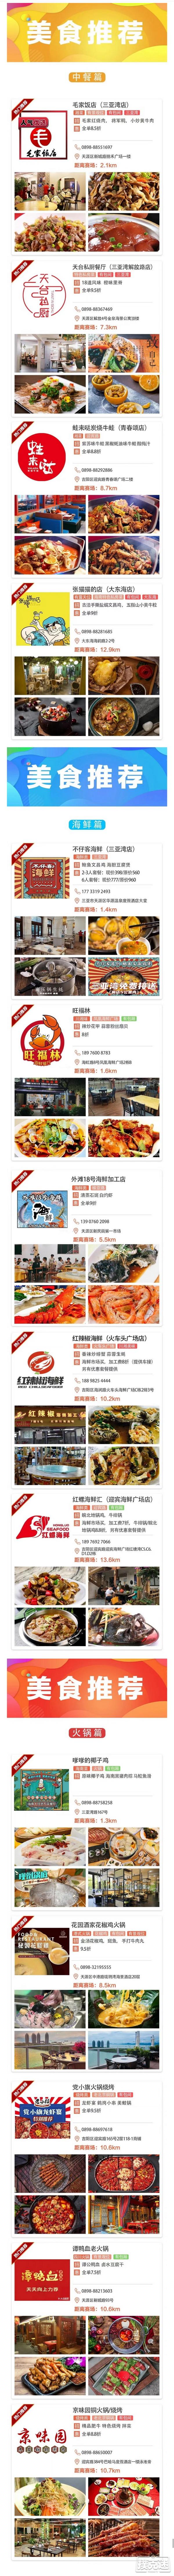 2020CPG®三亚总决赛美食、旅游景点推荐